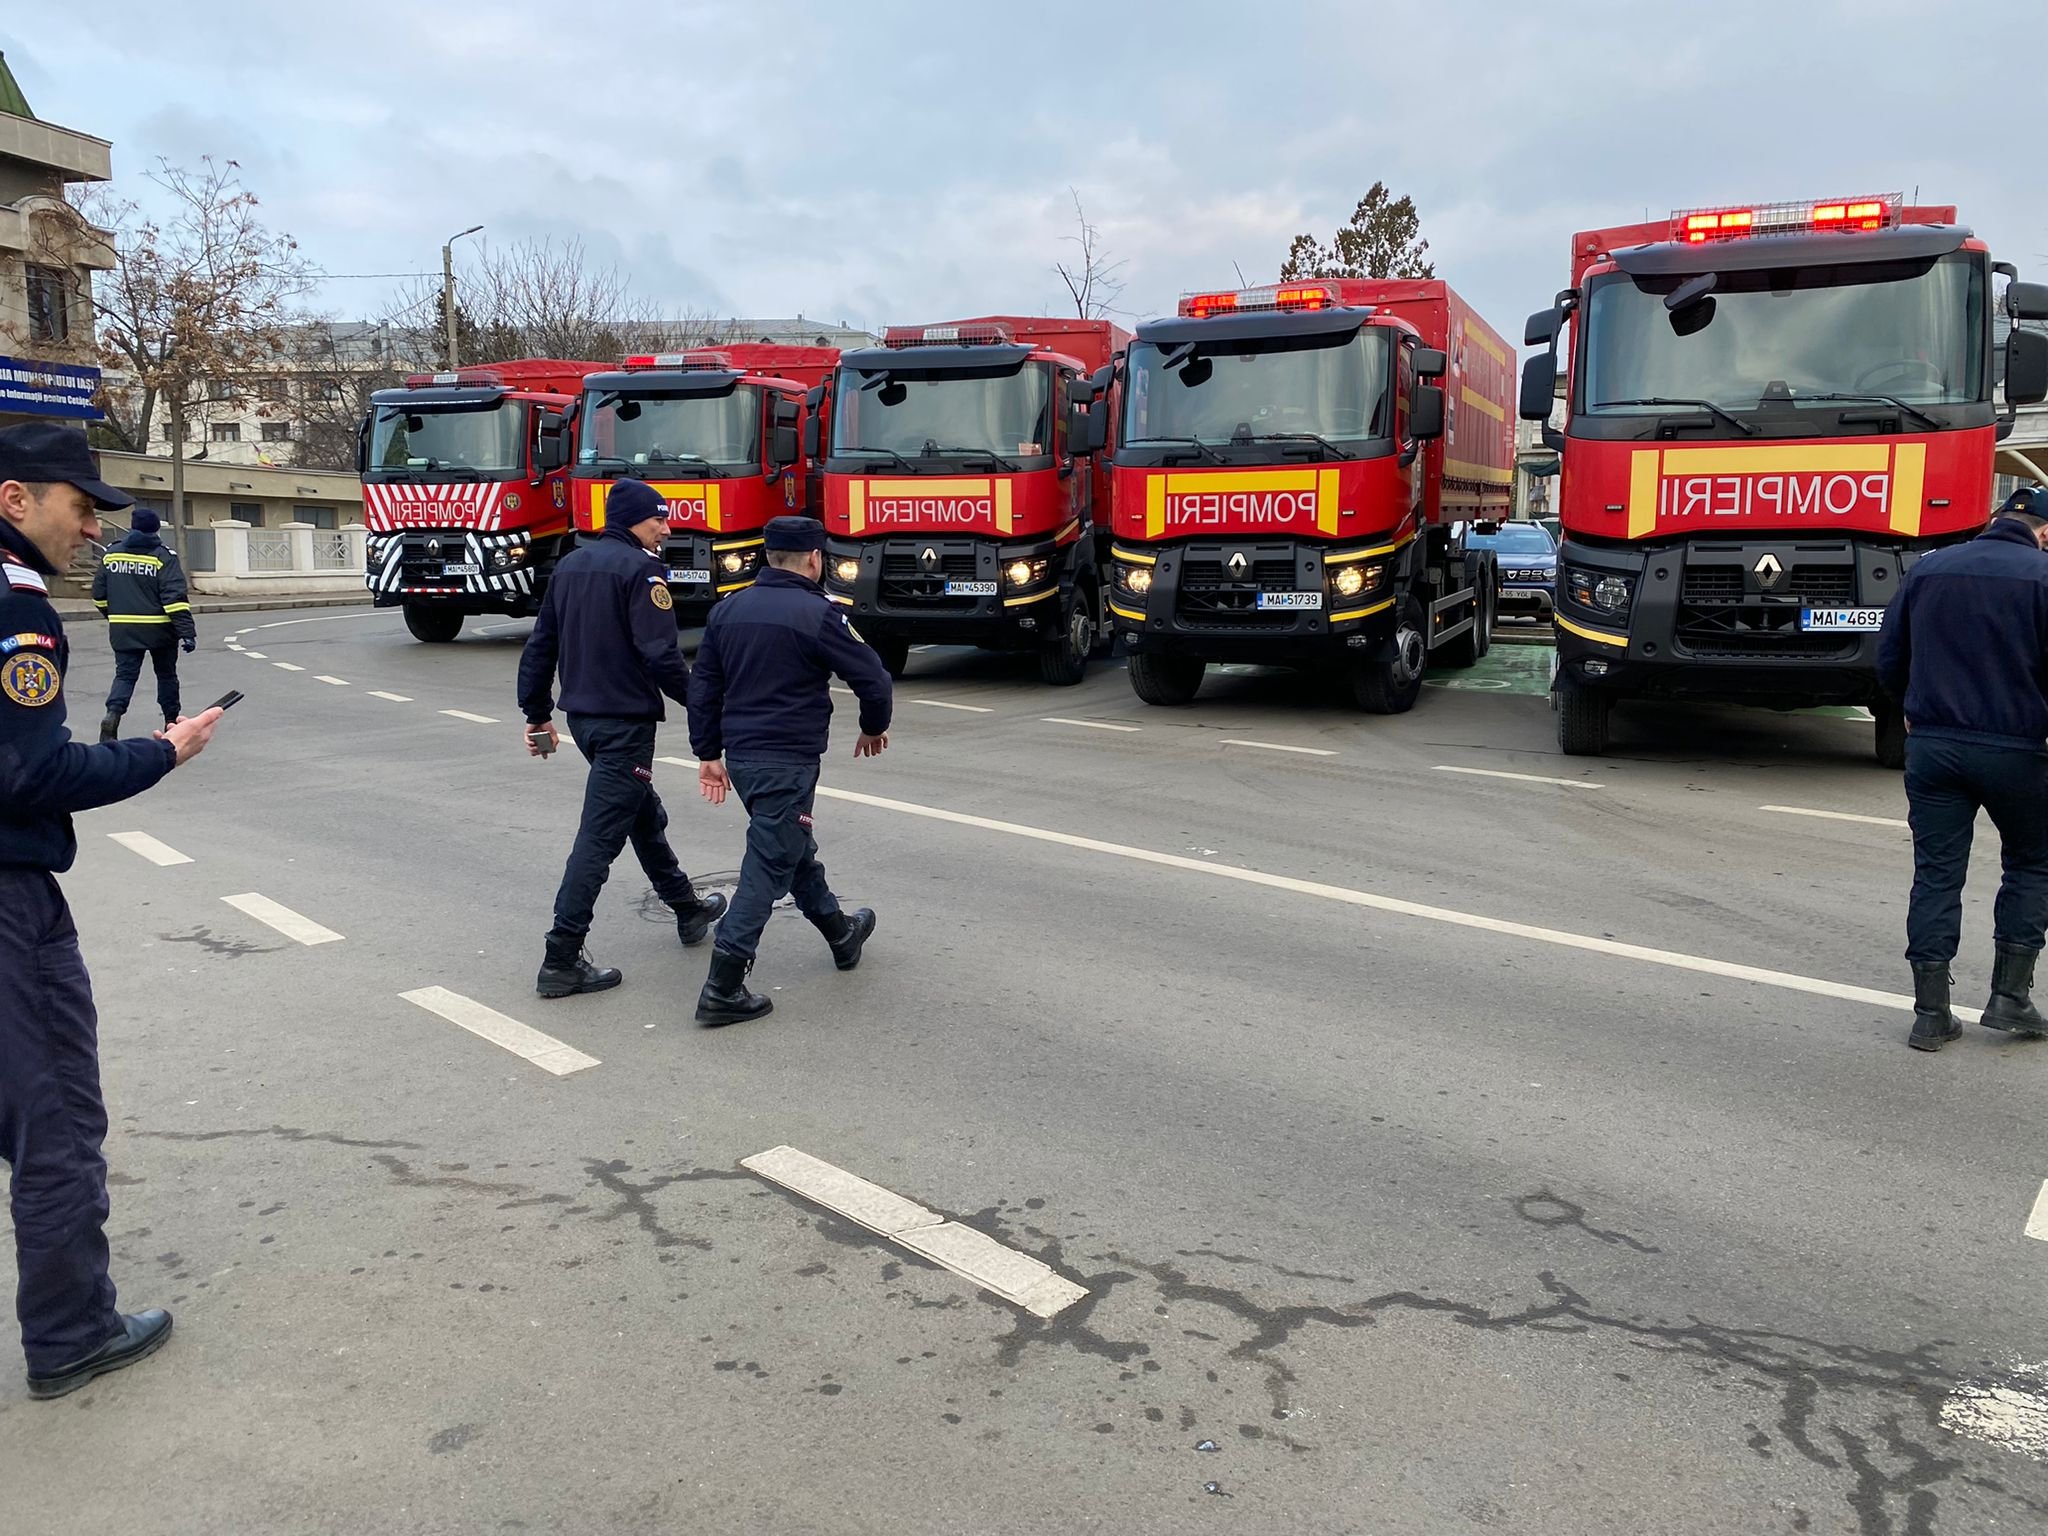  Ajutoarele strânse de ieșeni au fost trimise la Cernăuți cu 5 camioane ale ISU